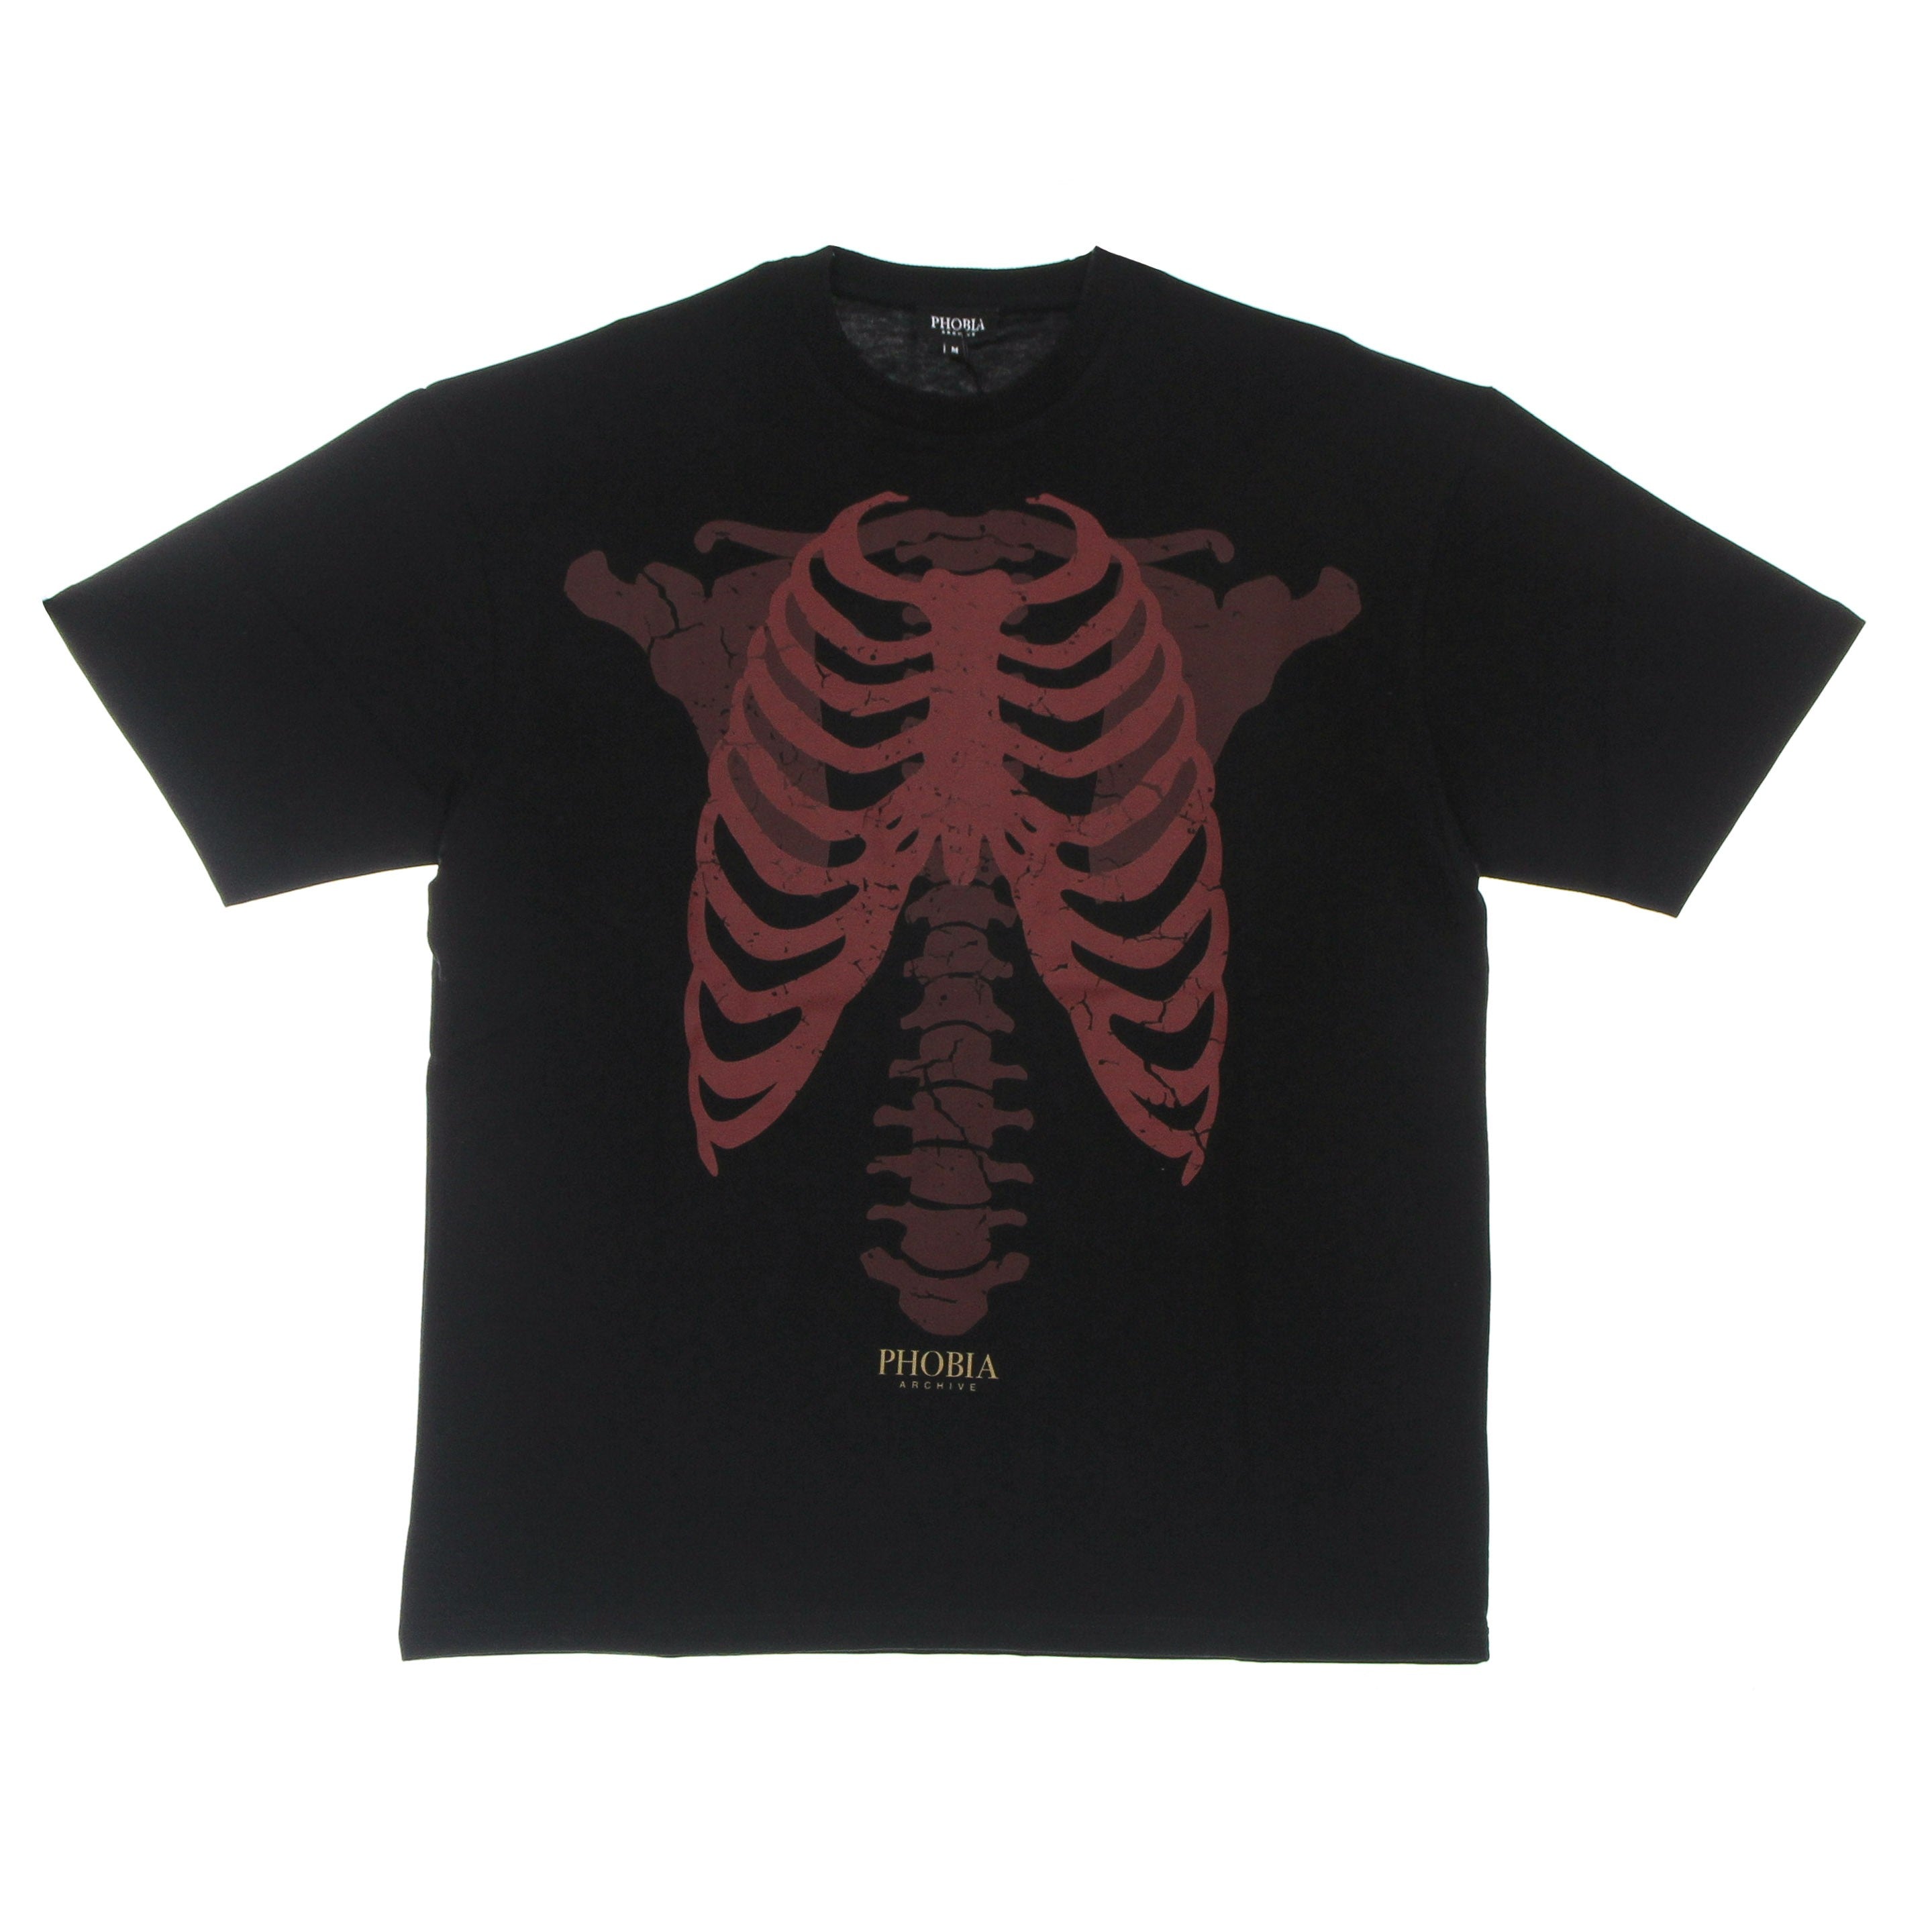 Phobia, Maglietta Uomo Skeleton Print Tee, Black/red